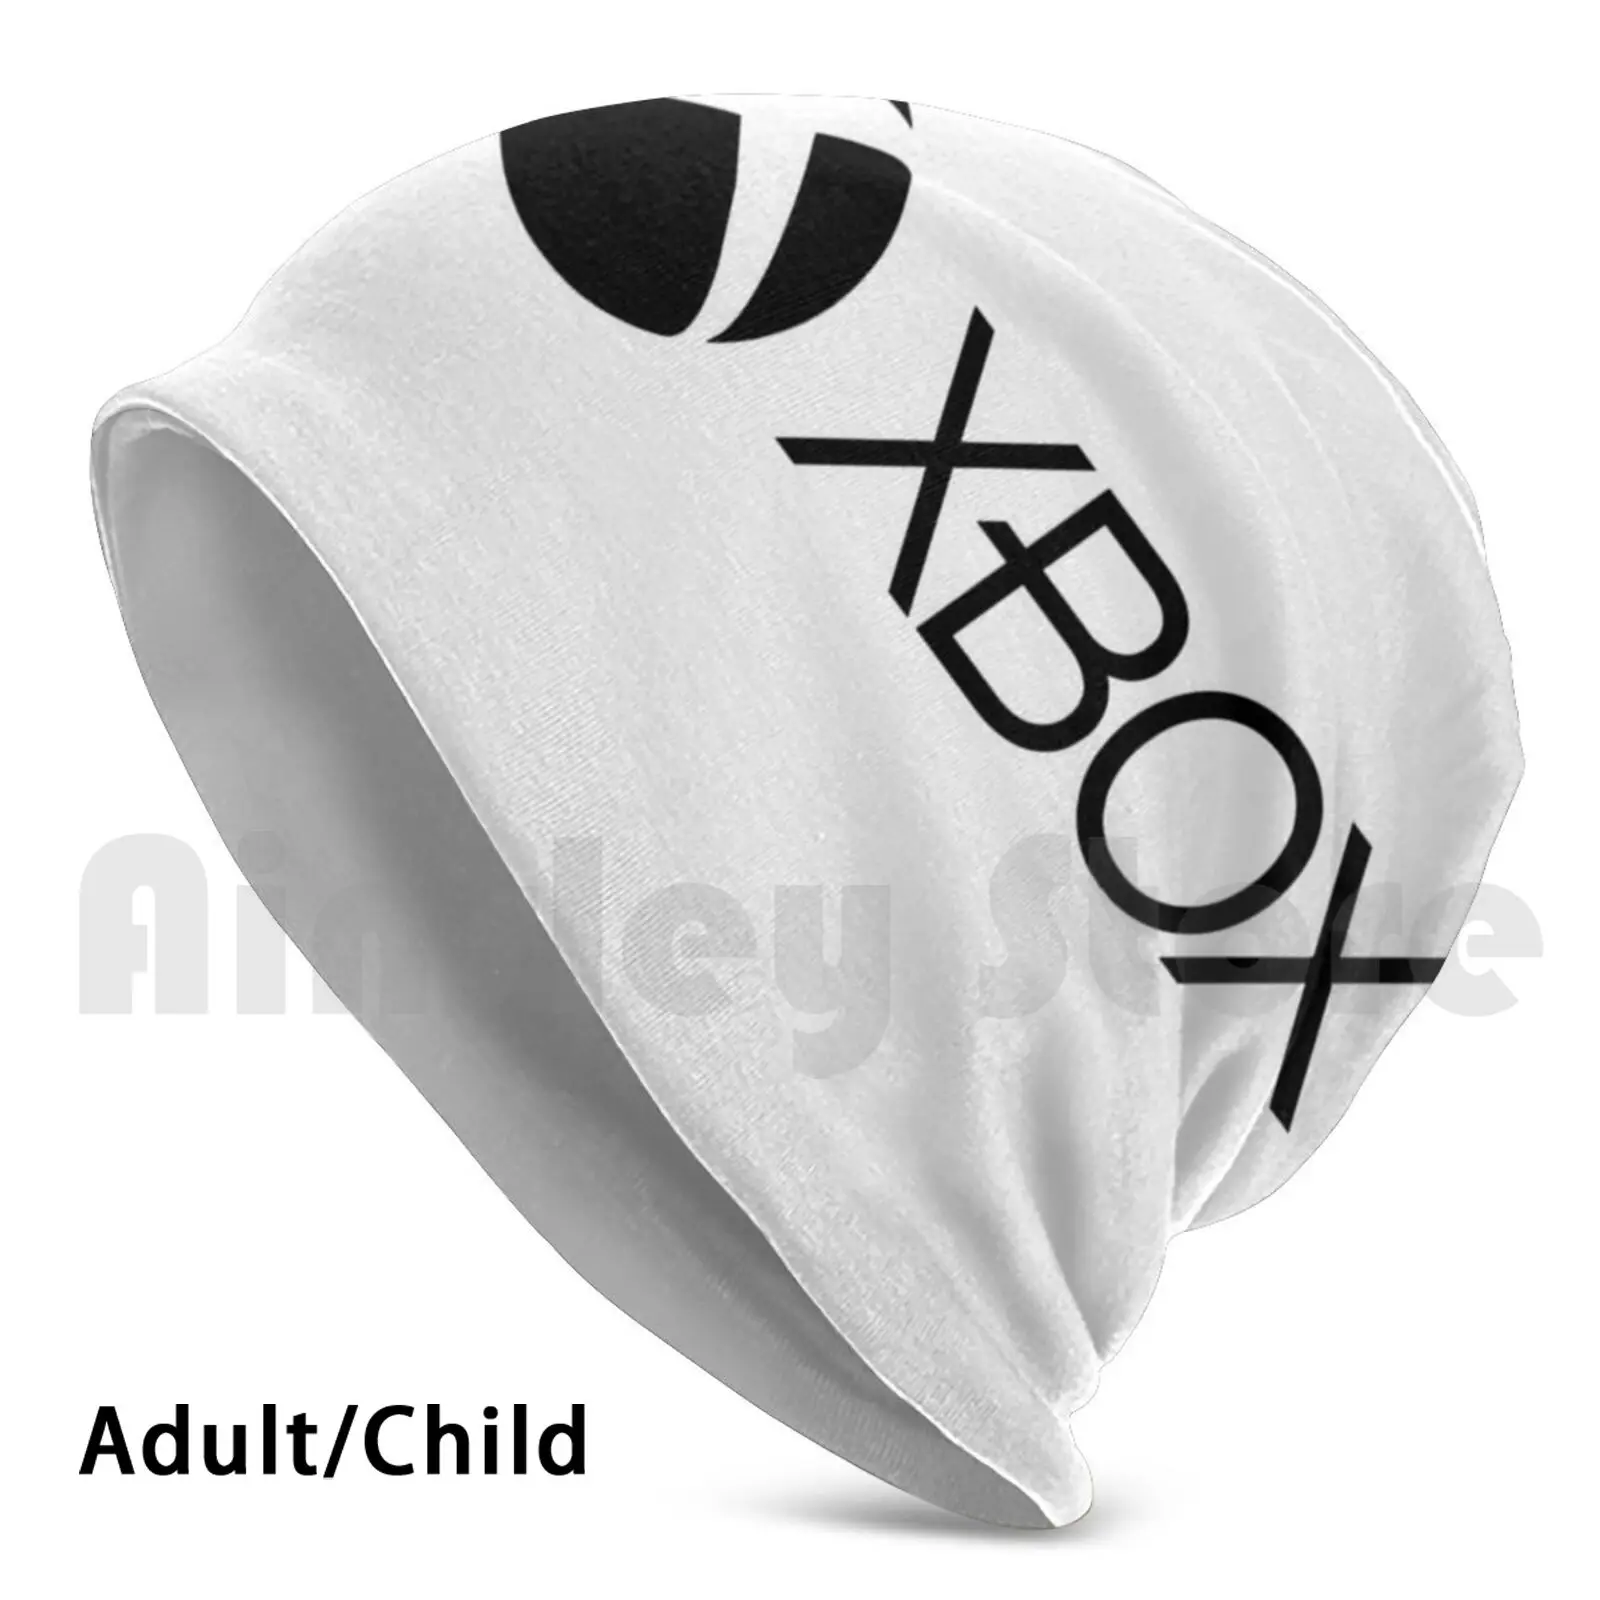 

Шапочки для Xbox, пуловер, шапка, удобная Игровая приставка Xbox Playstation, Ps 4, игровые компьютерные игры, Ps 3, видеоигры Geek, Xbox One